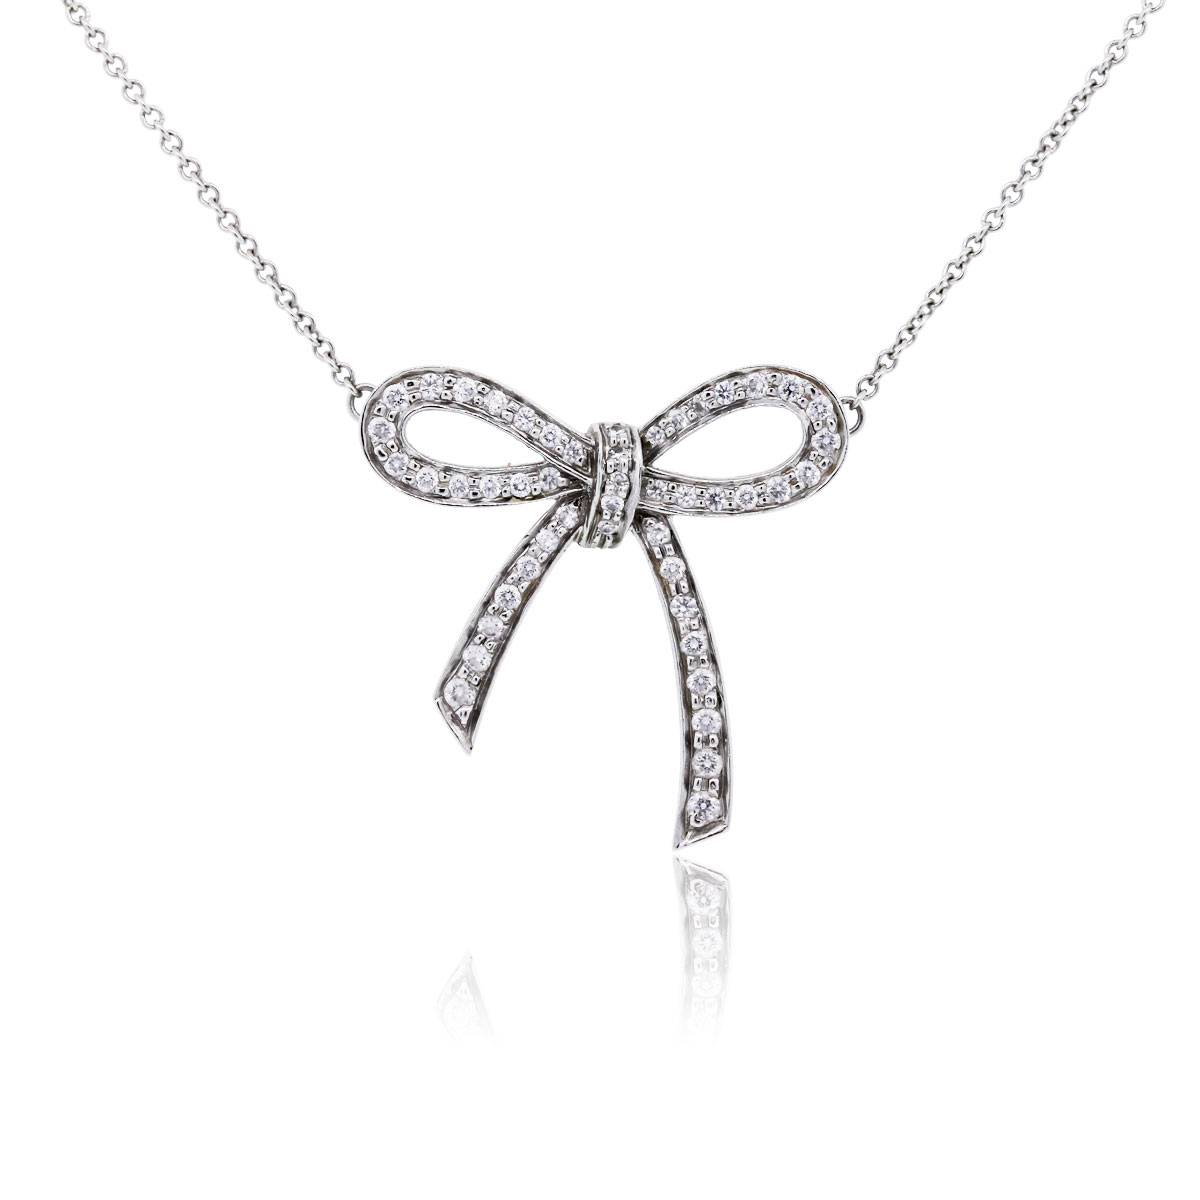 Tiffany diamond bow necklace